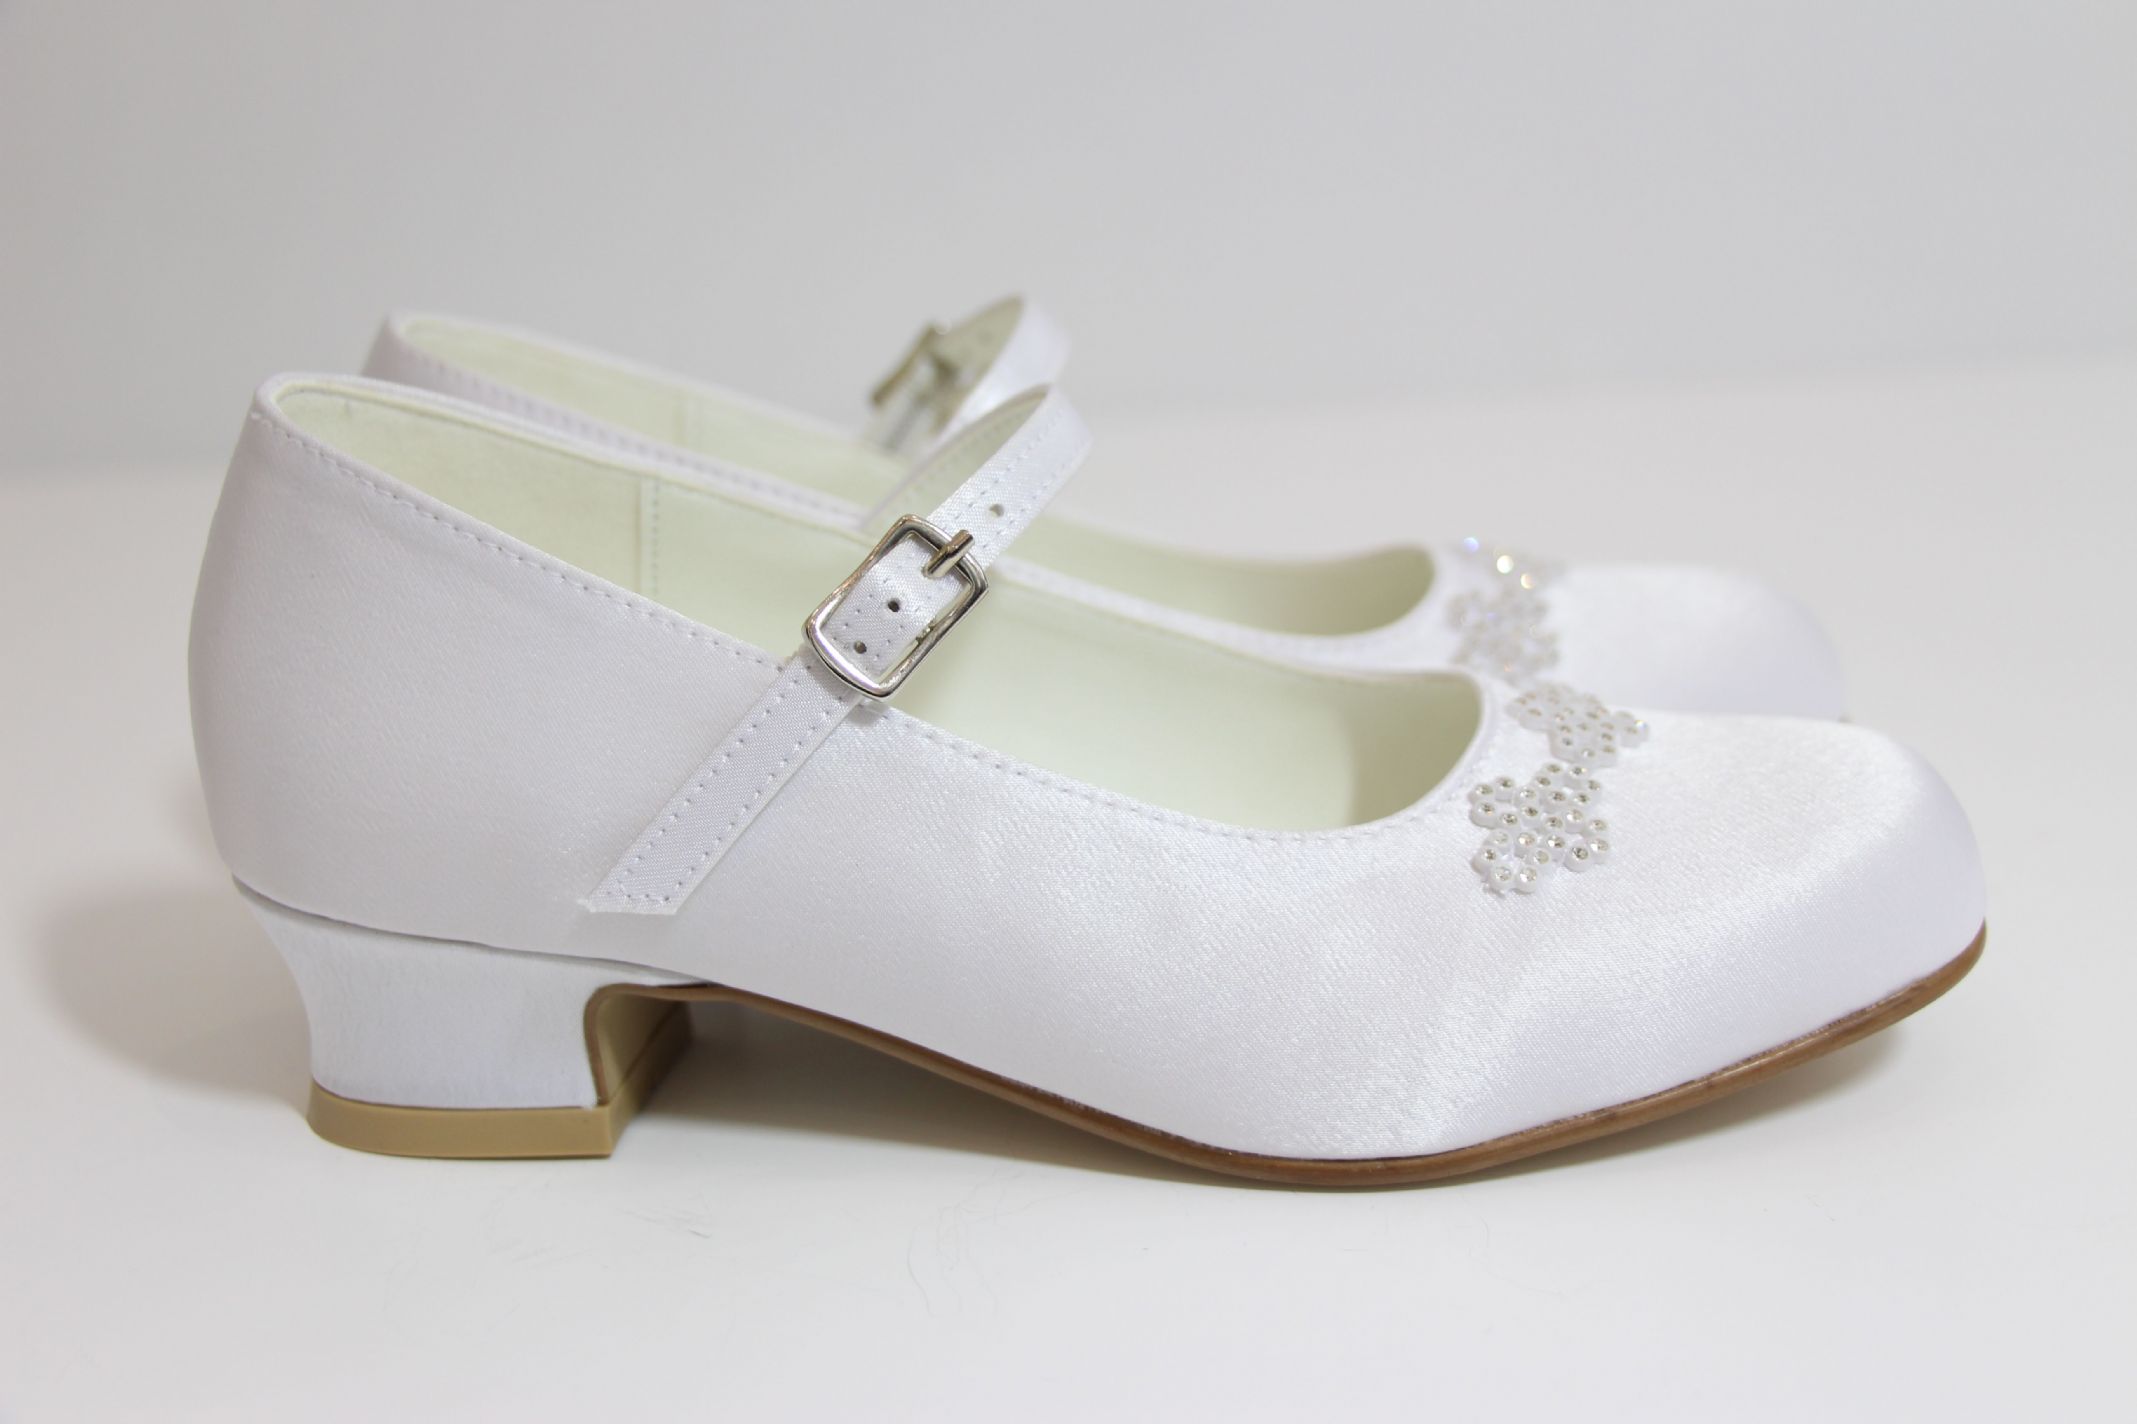 white communion shoes